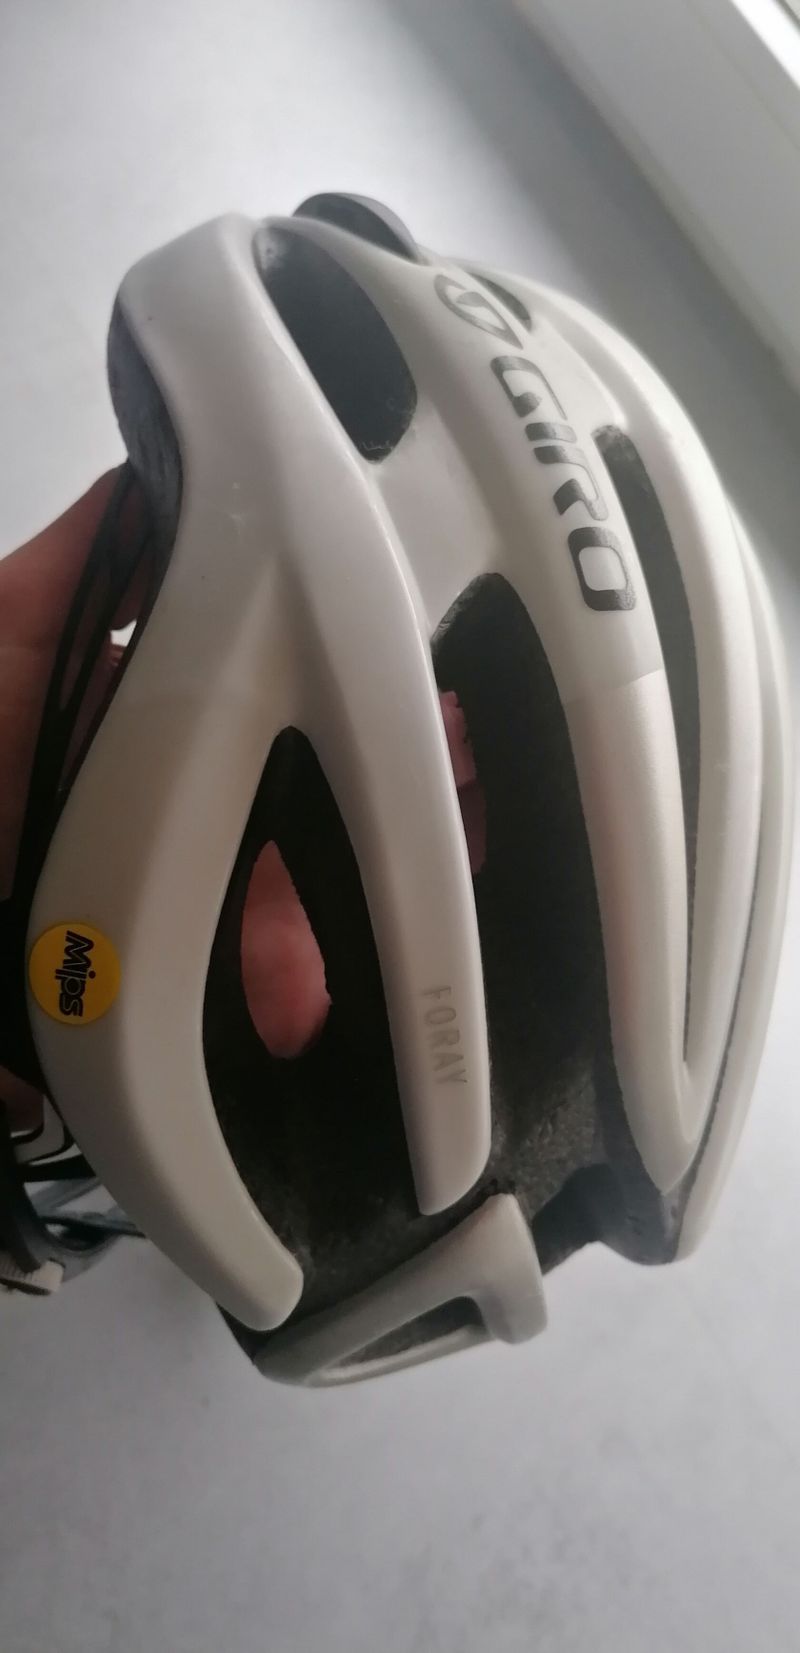 helma Giro Foray vel M (55-59cm) , Mips